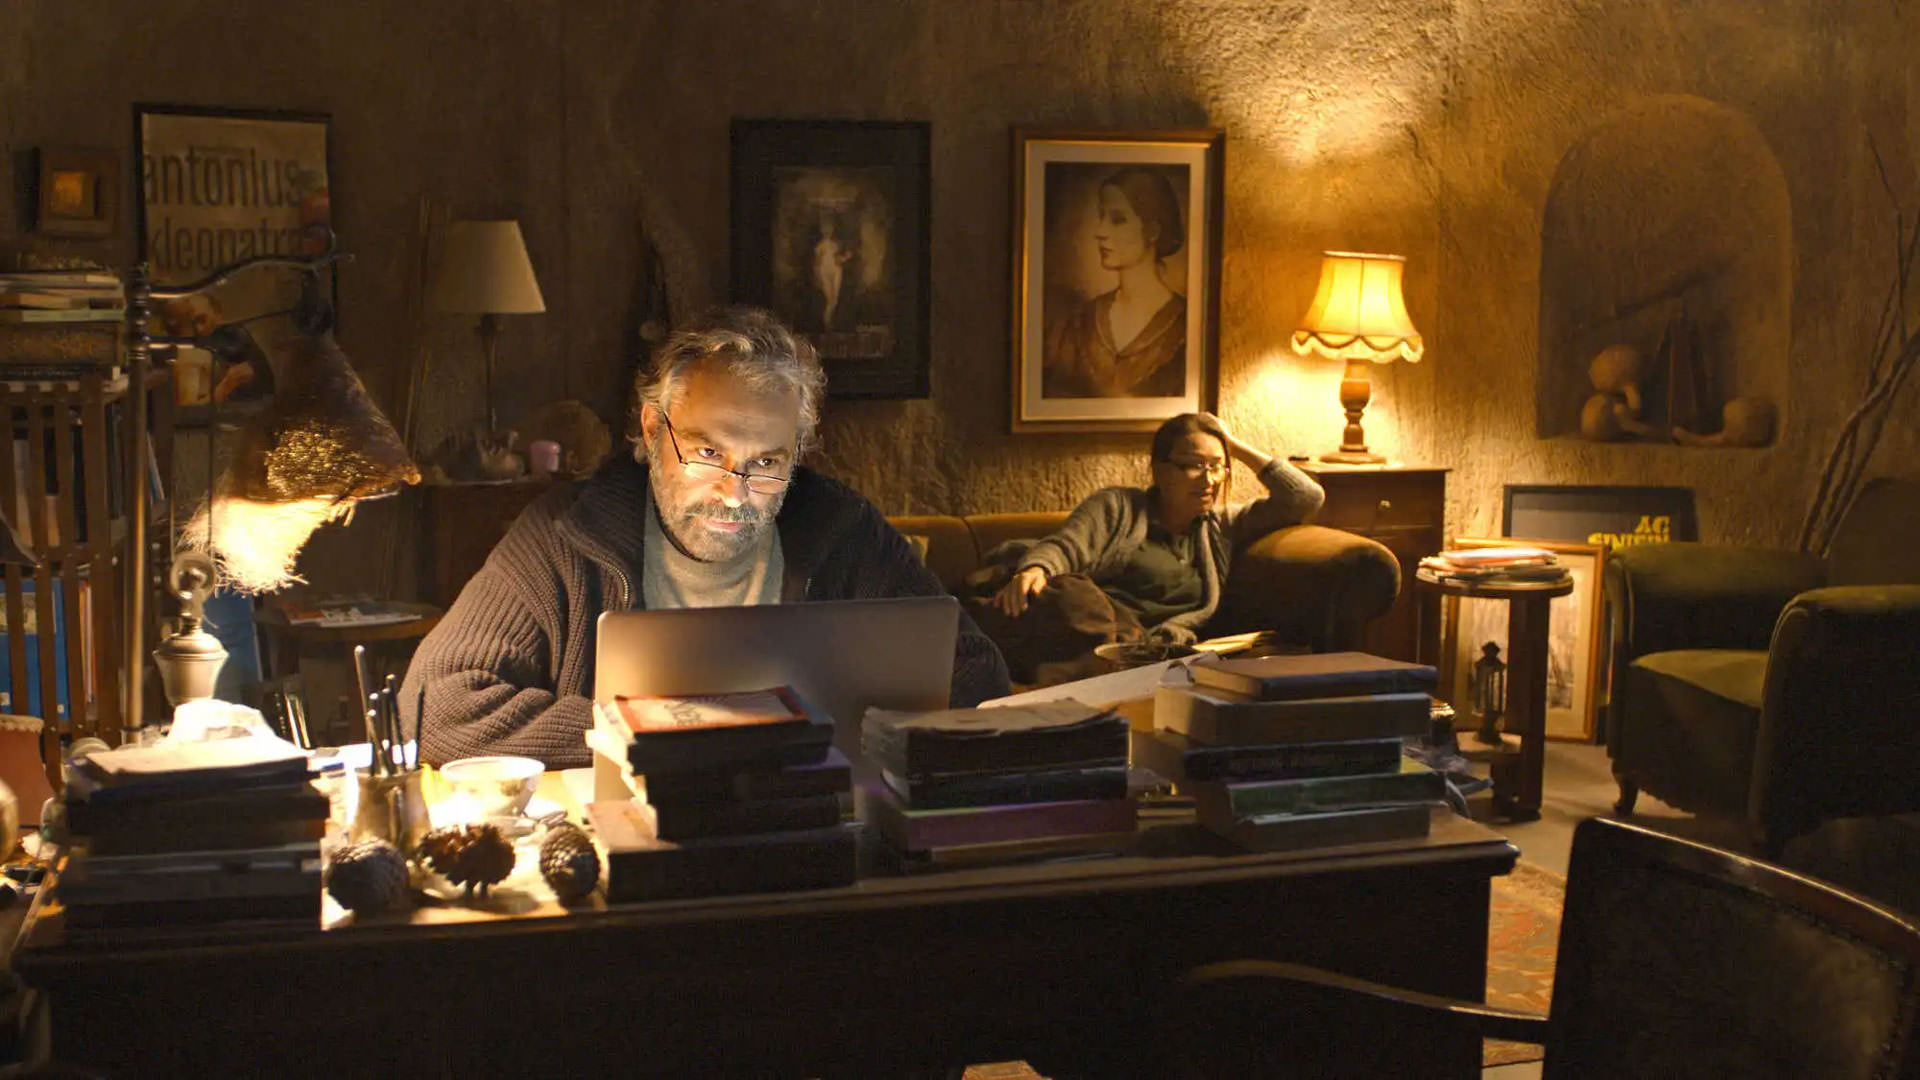 هالوک بیلگینر پشت میز می نشیند و با لپ تاپ در اتاقی با نور زرد رنگ می نویسد در حالی که دمت اکبا پشت سر او روی کاناپه نشسته است در صحنه ای از فیلم خواب زمستانی به کارگردانی نوری بیلگه جیلان.